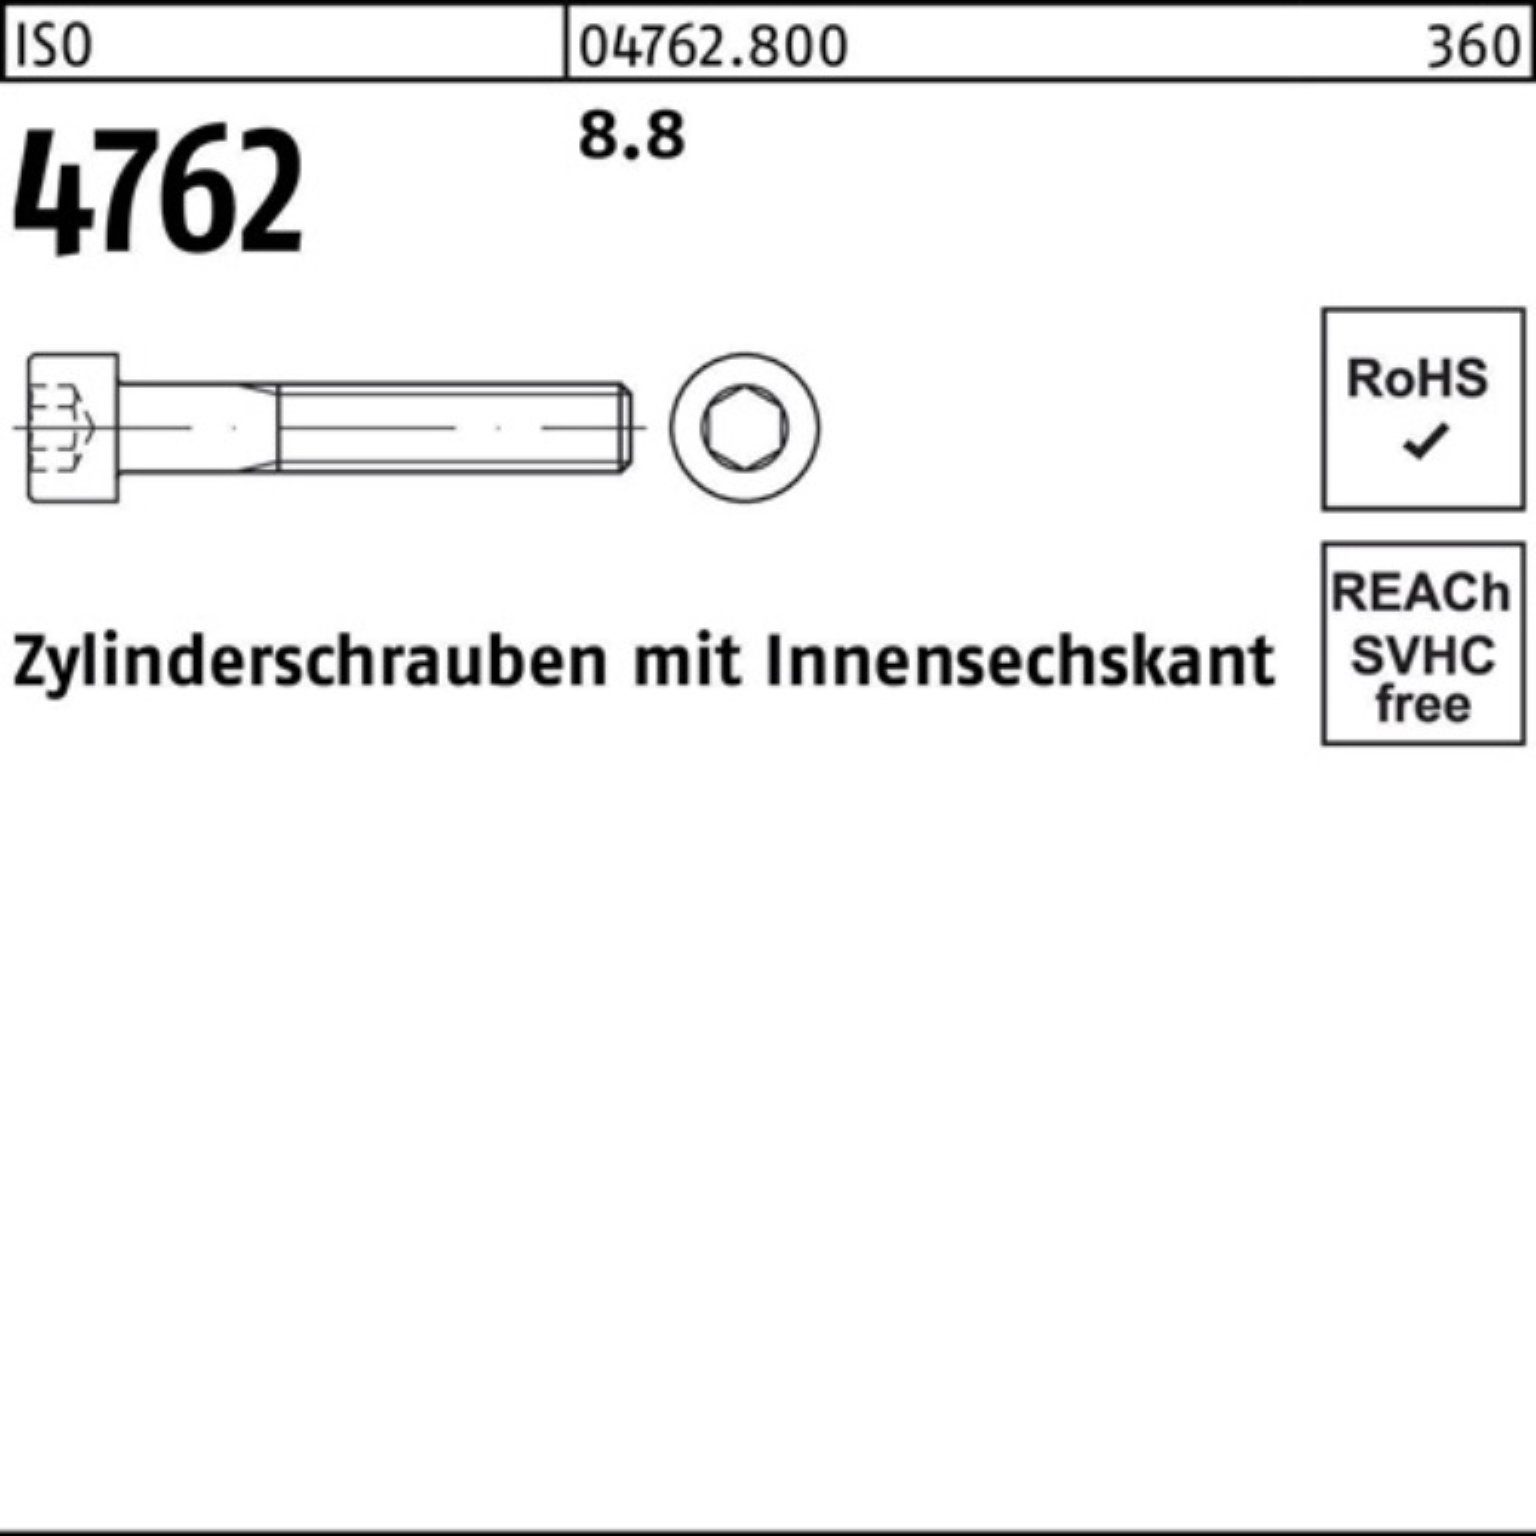 Pack Zylinderschraube Reyher Innen-6kt 8.8 Stück M18x 100er 25 120 Zylinderschraube 4762 ISO